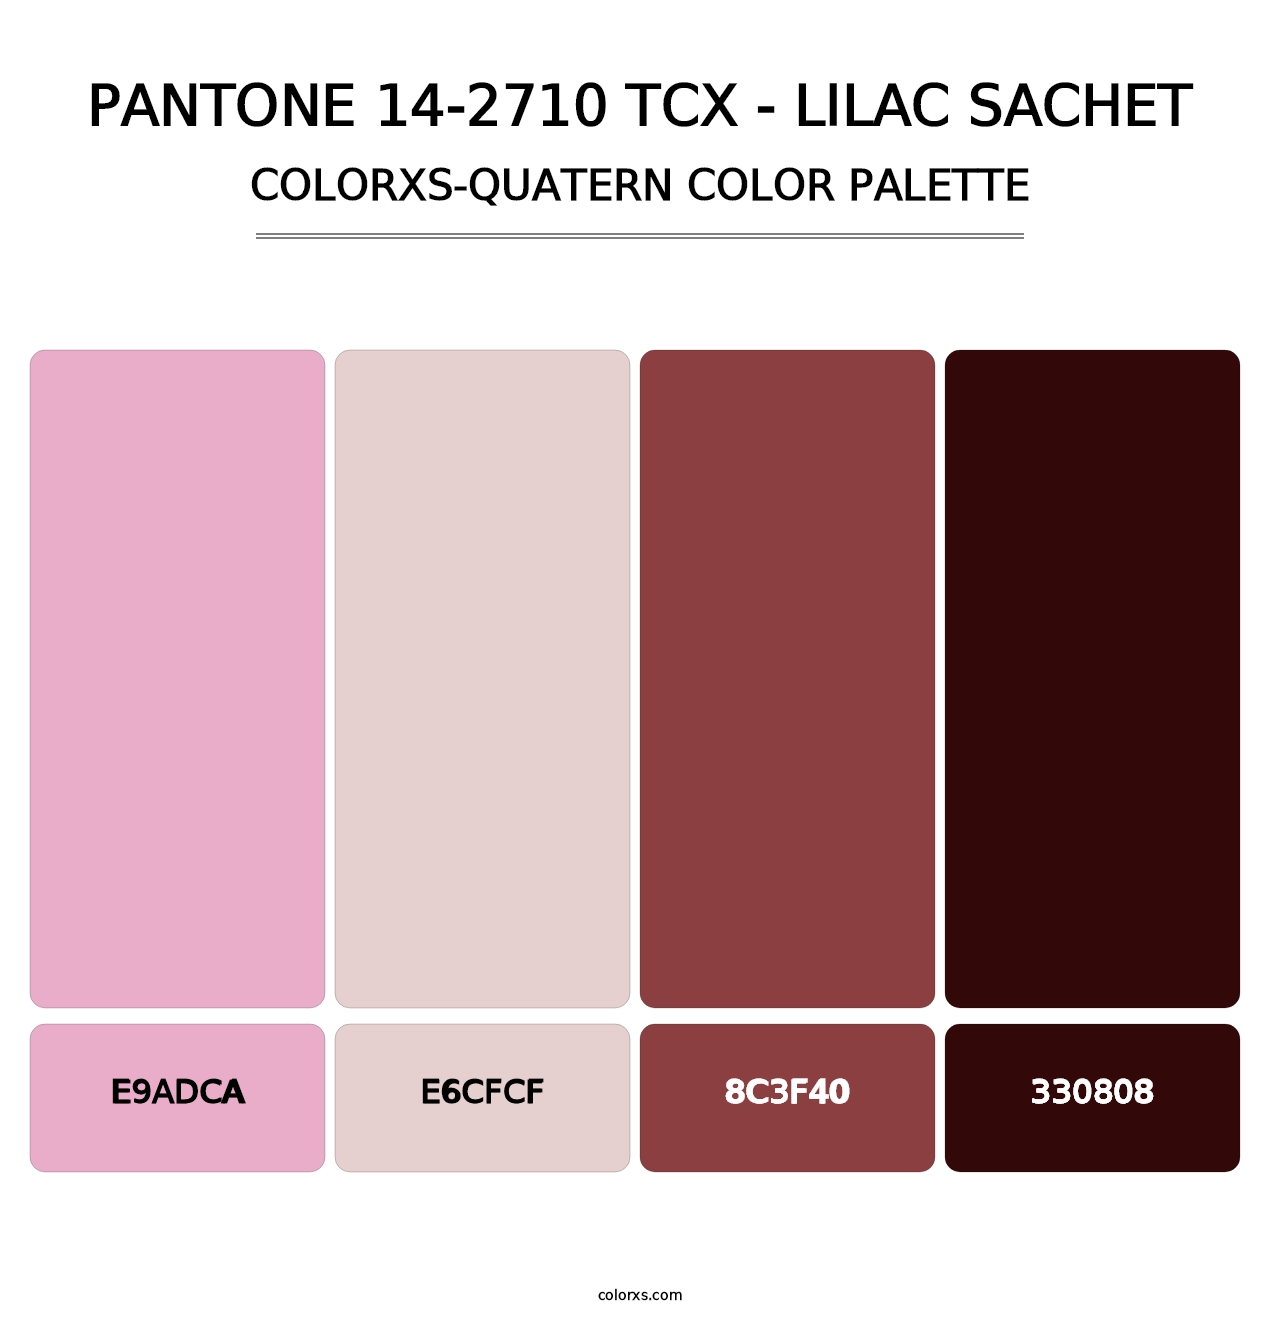 PANTONE 14-2710 TCX - Lilac Sachet - Colorxs Quatern Palette